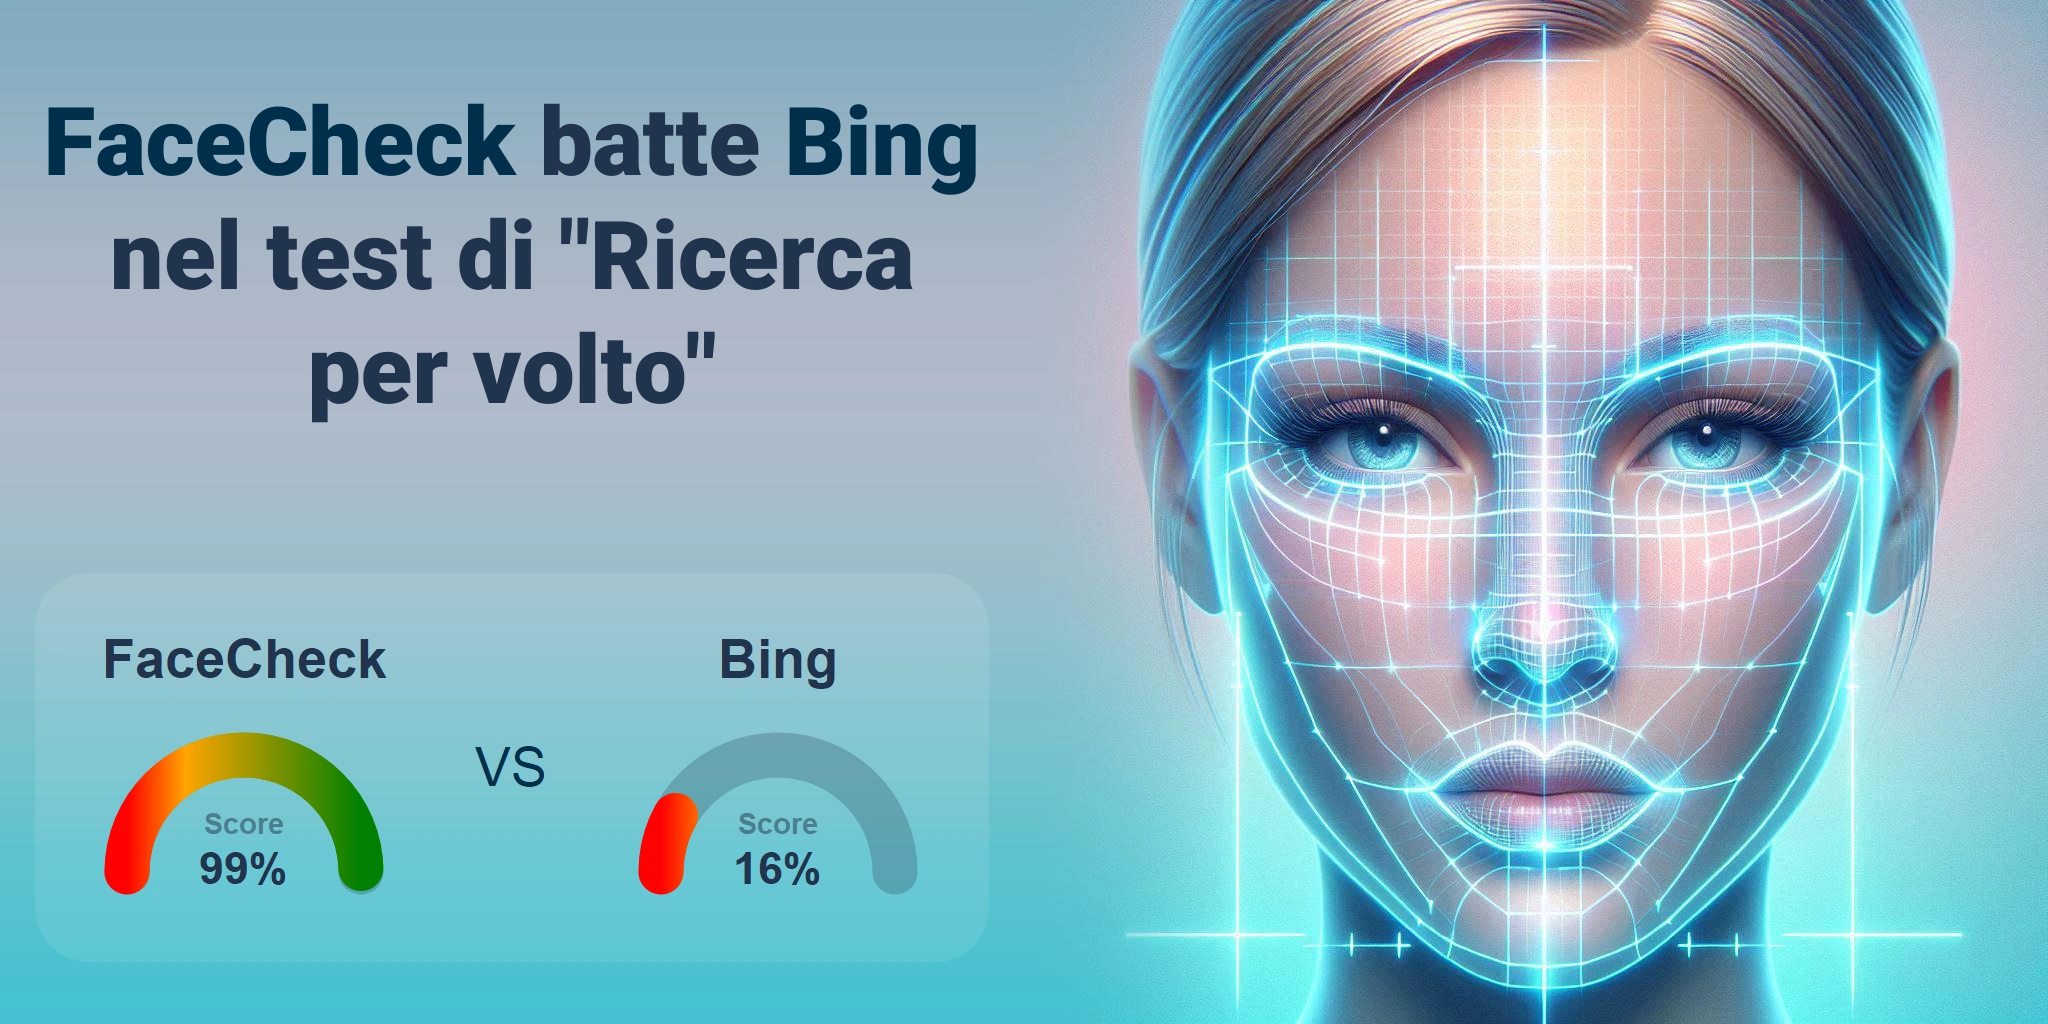 Qual è migliore per la ricerca di volti: <br>FaceCheck o Bing?